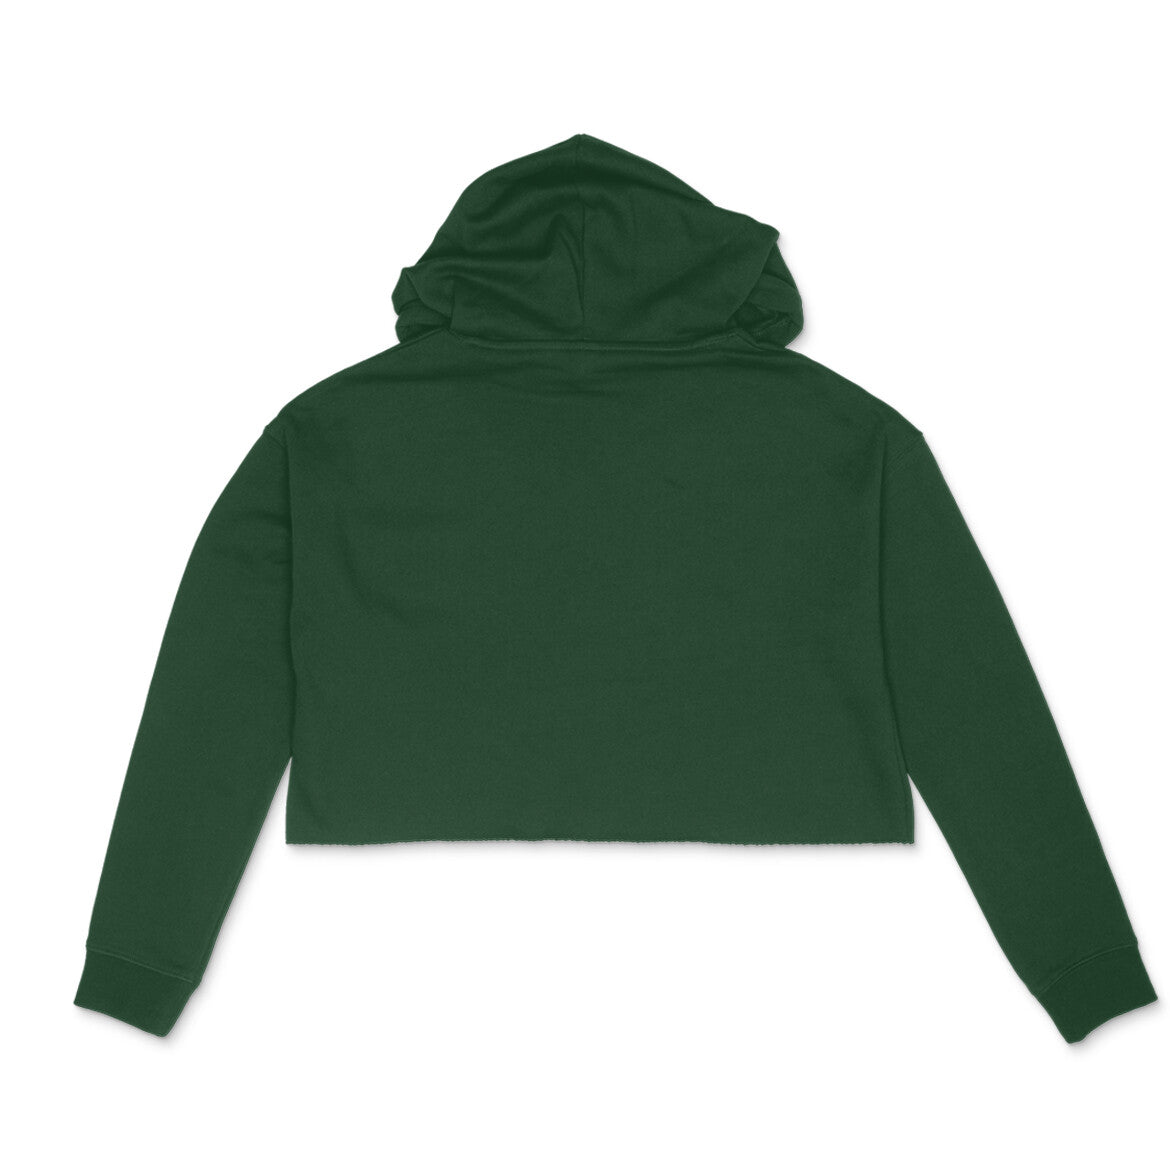 Crop hoodie - Stay Curious - Sleek Designs - Hoodie Women